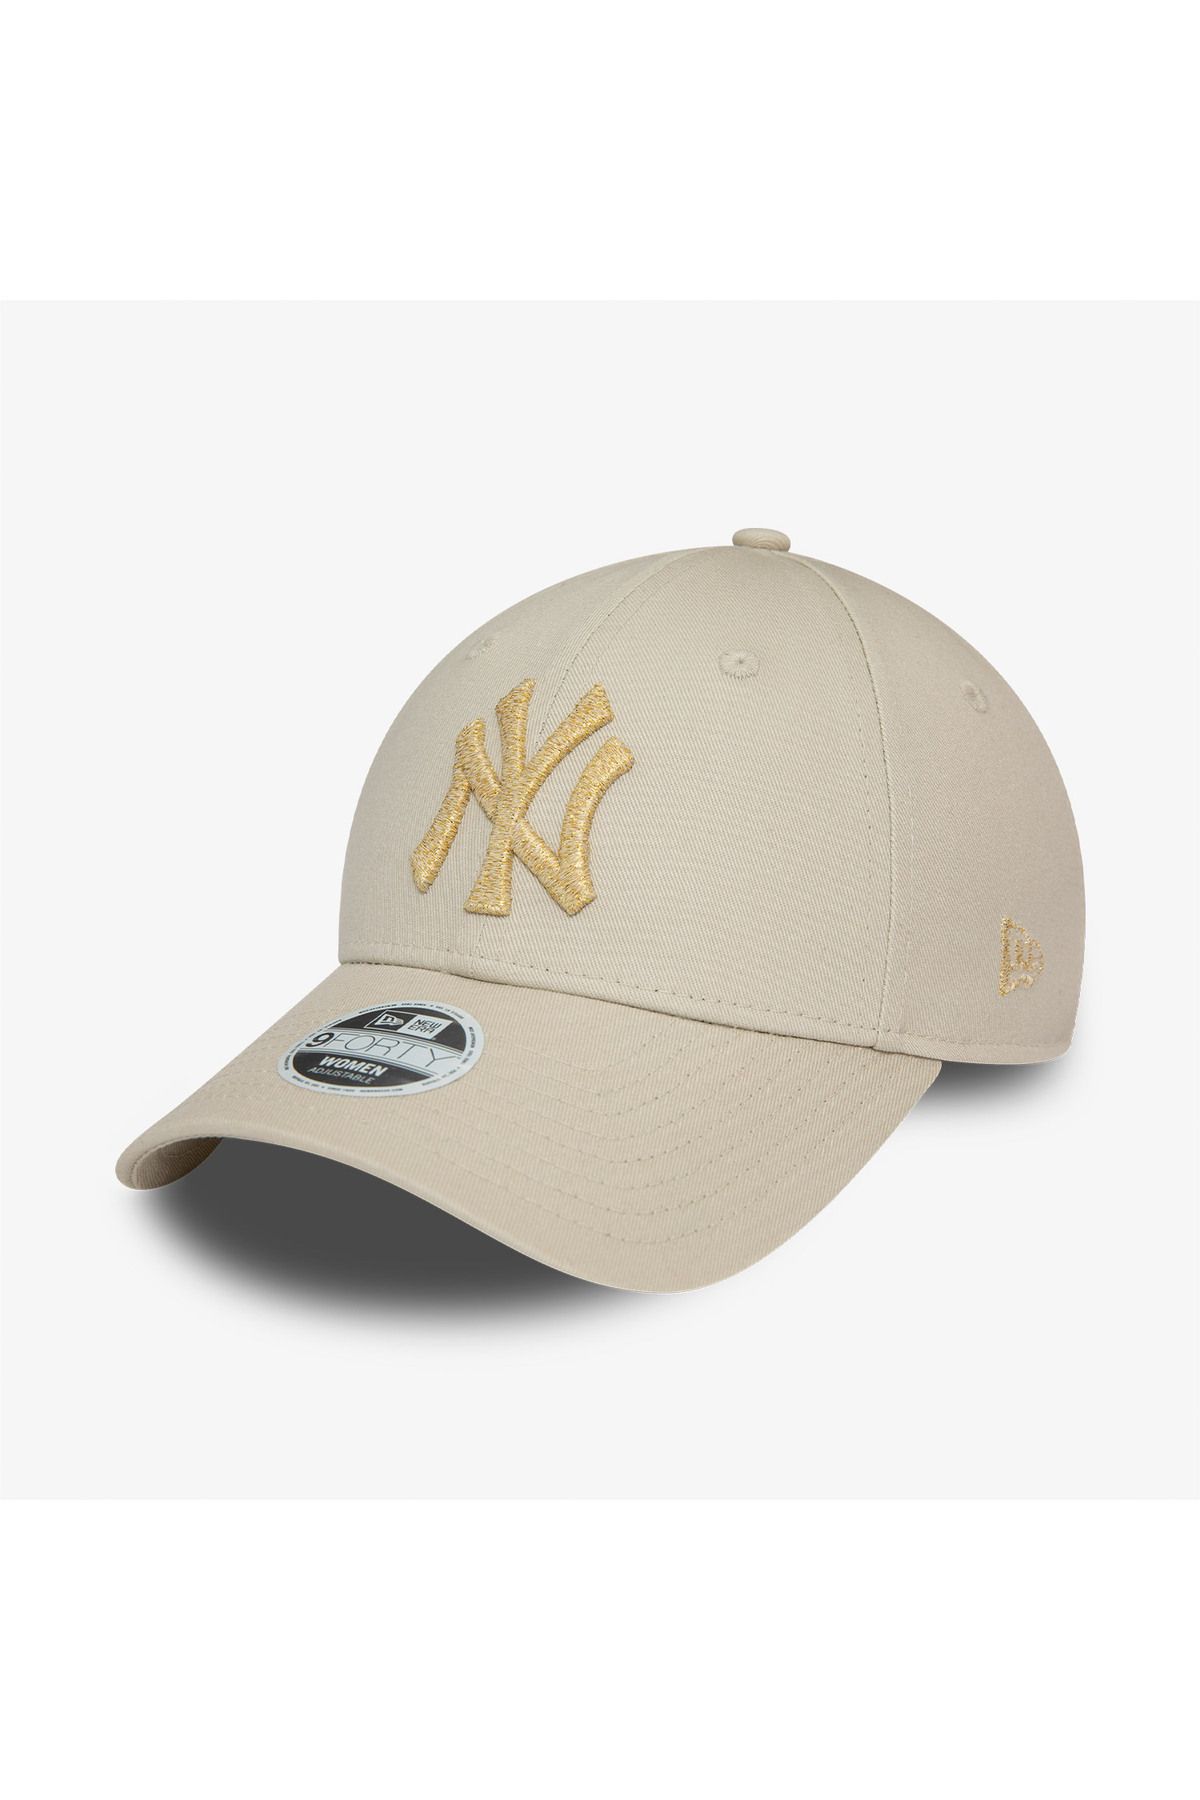 NEW ERA New York Yankees Metallic Logo Kadın Bej Şapka